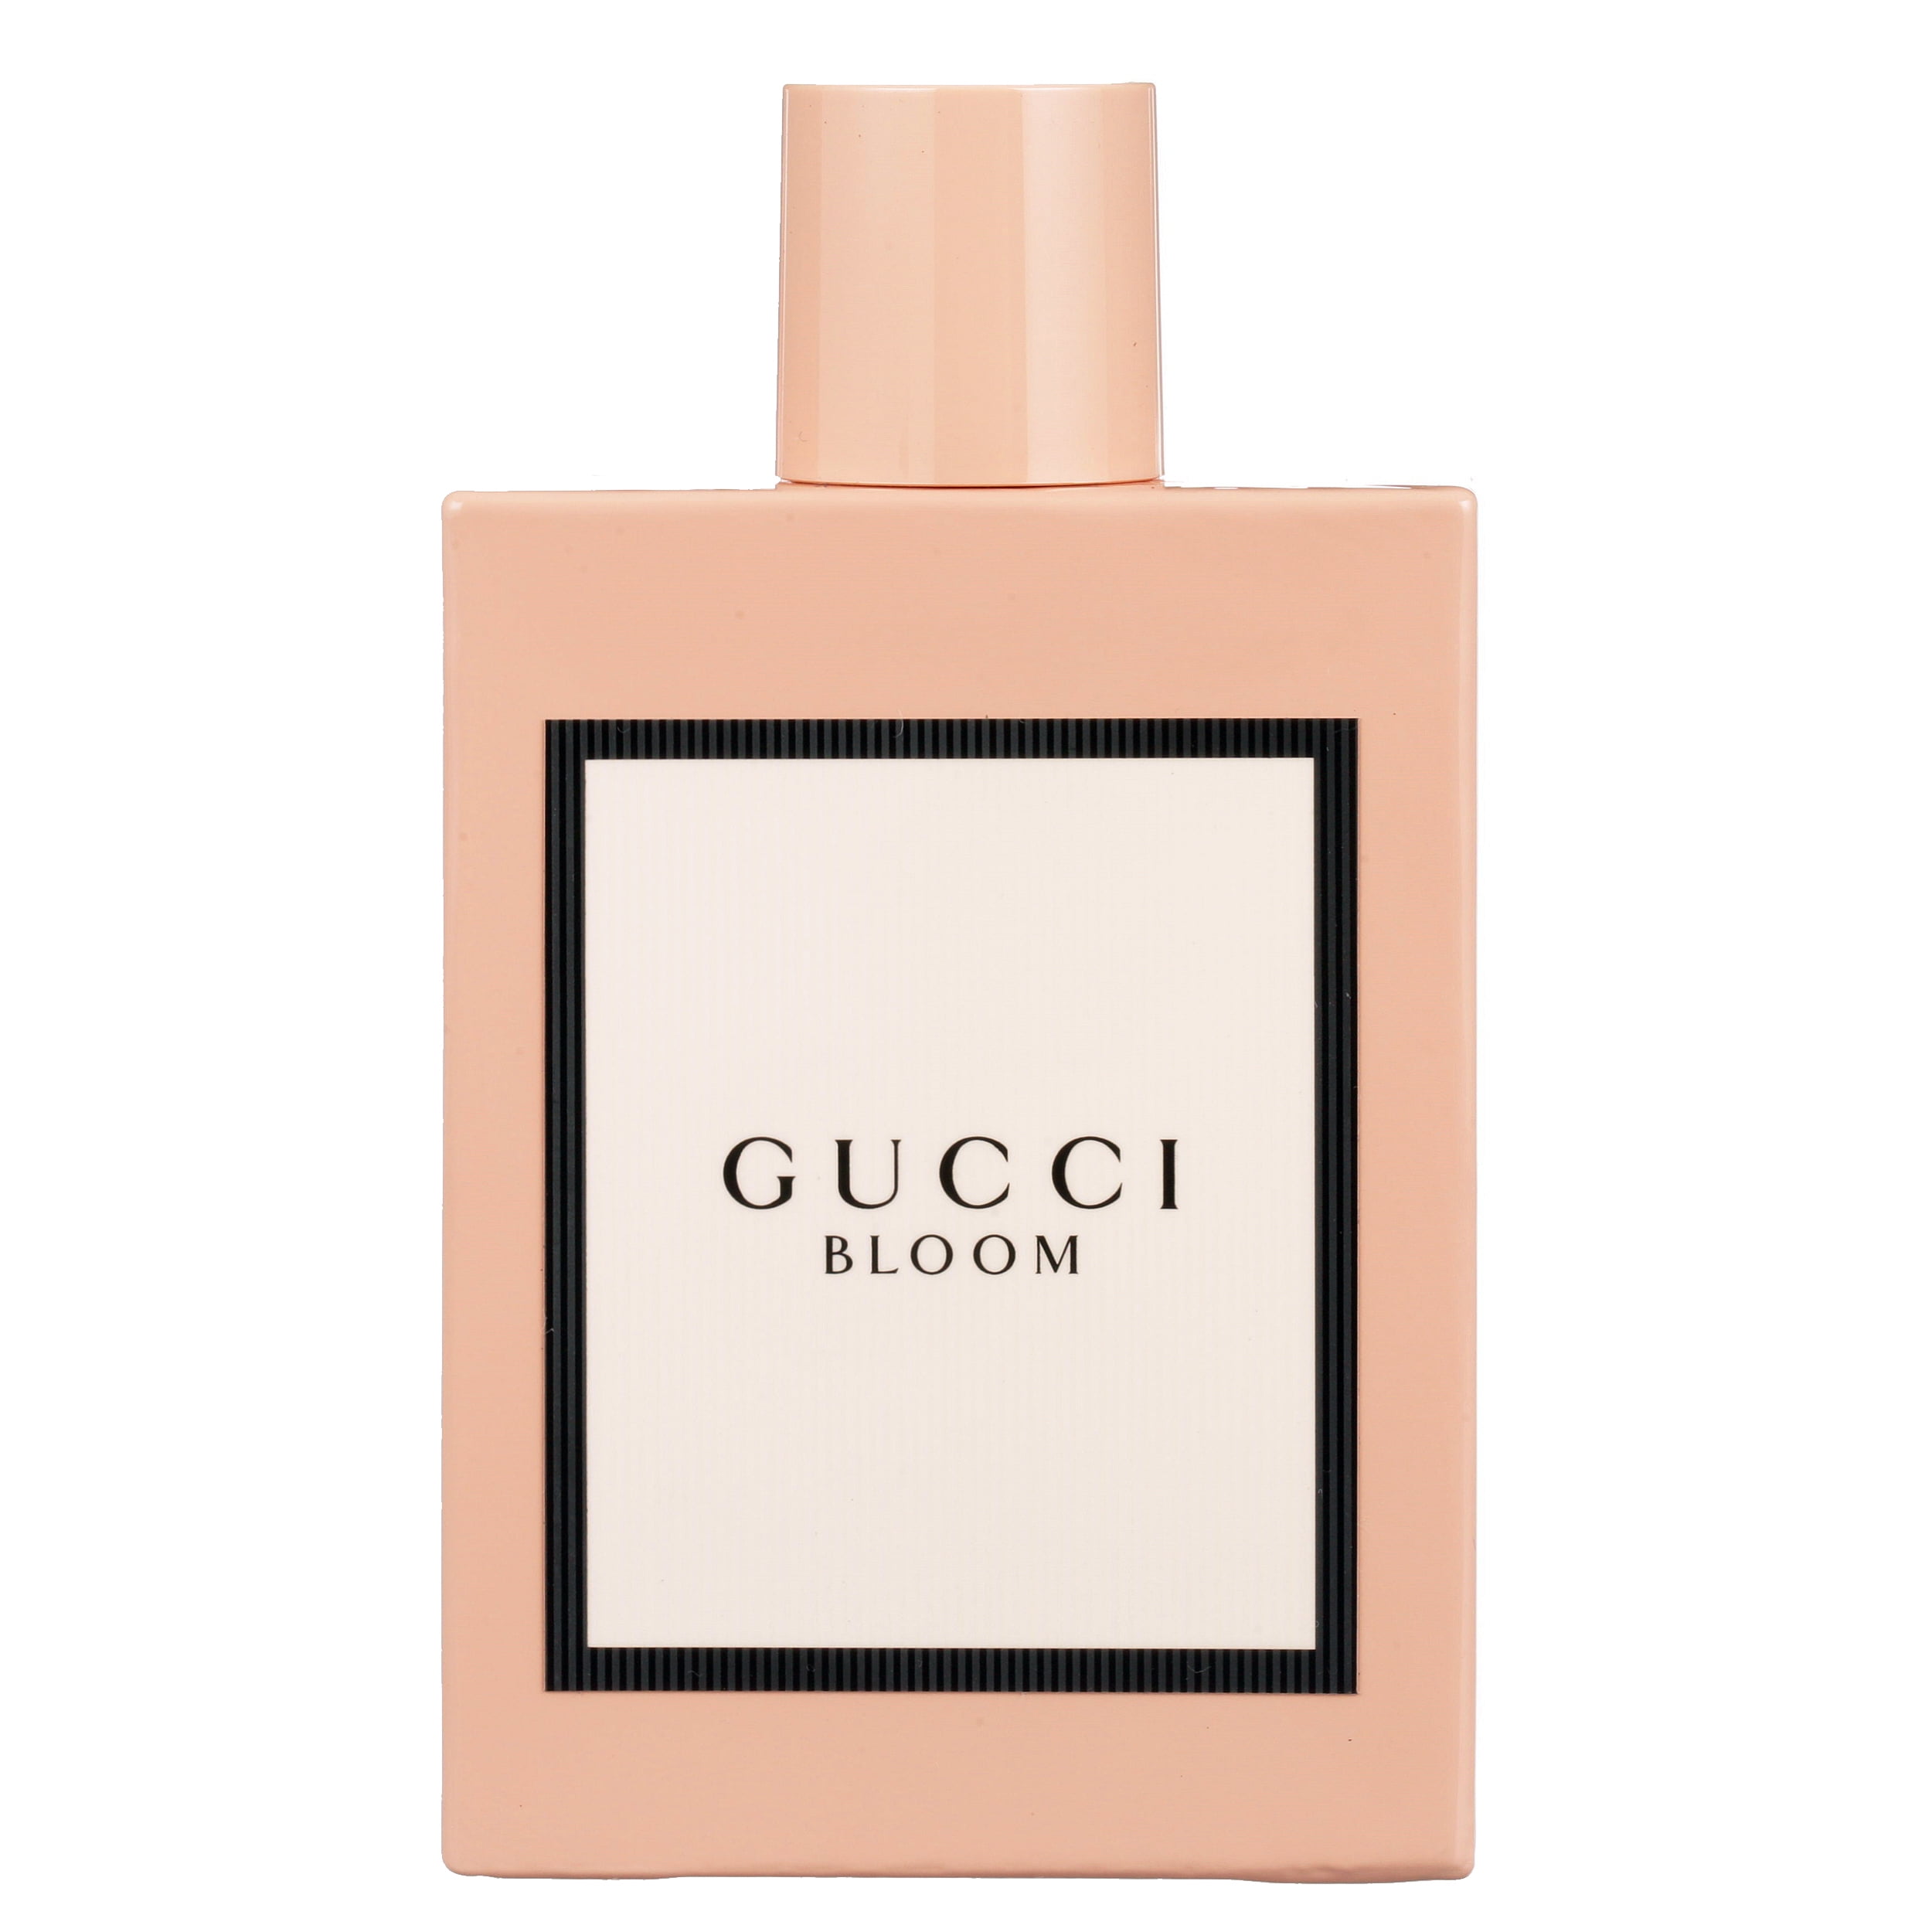 Veraangenamen thuis onderbreken Gucci Bloom Eau De Parfum, Perfume for Women, 3.3 Oz - Walmart.com